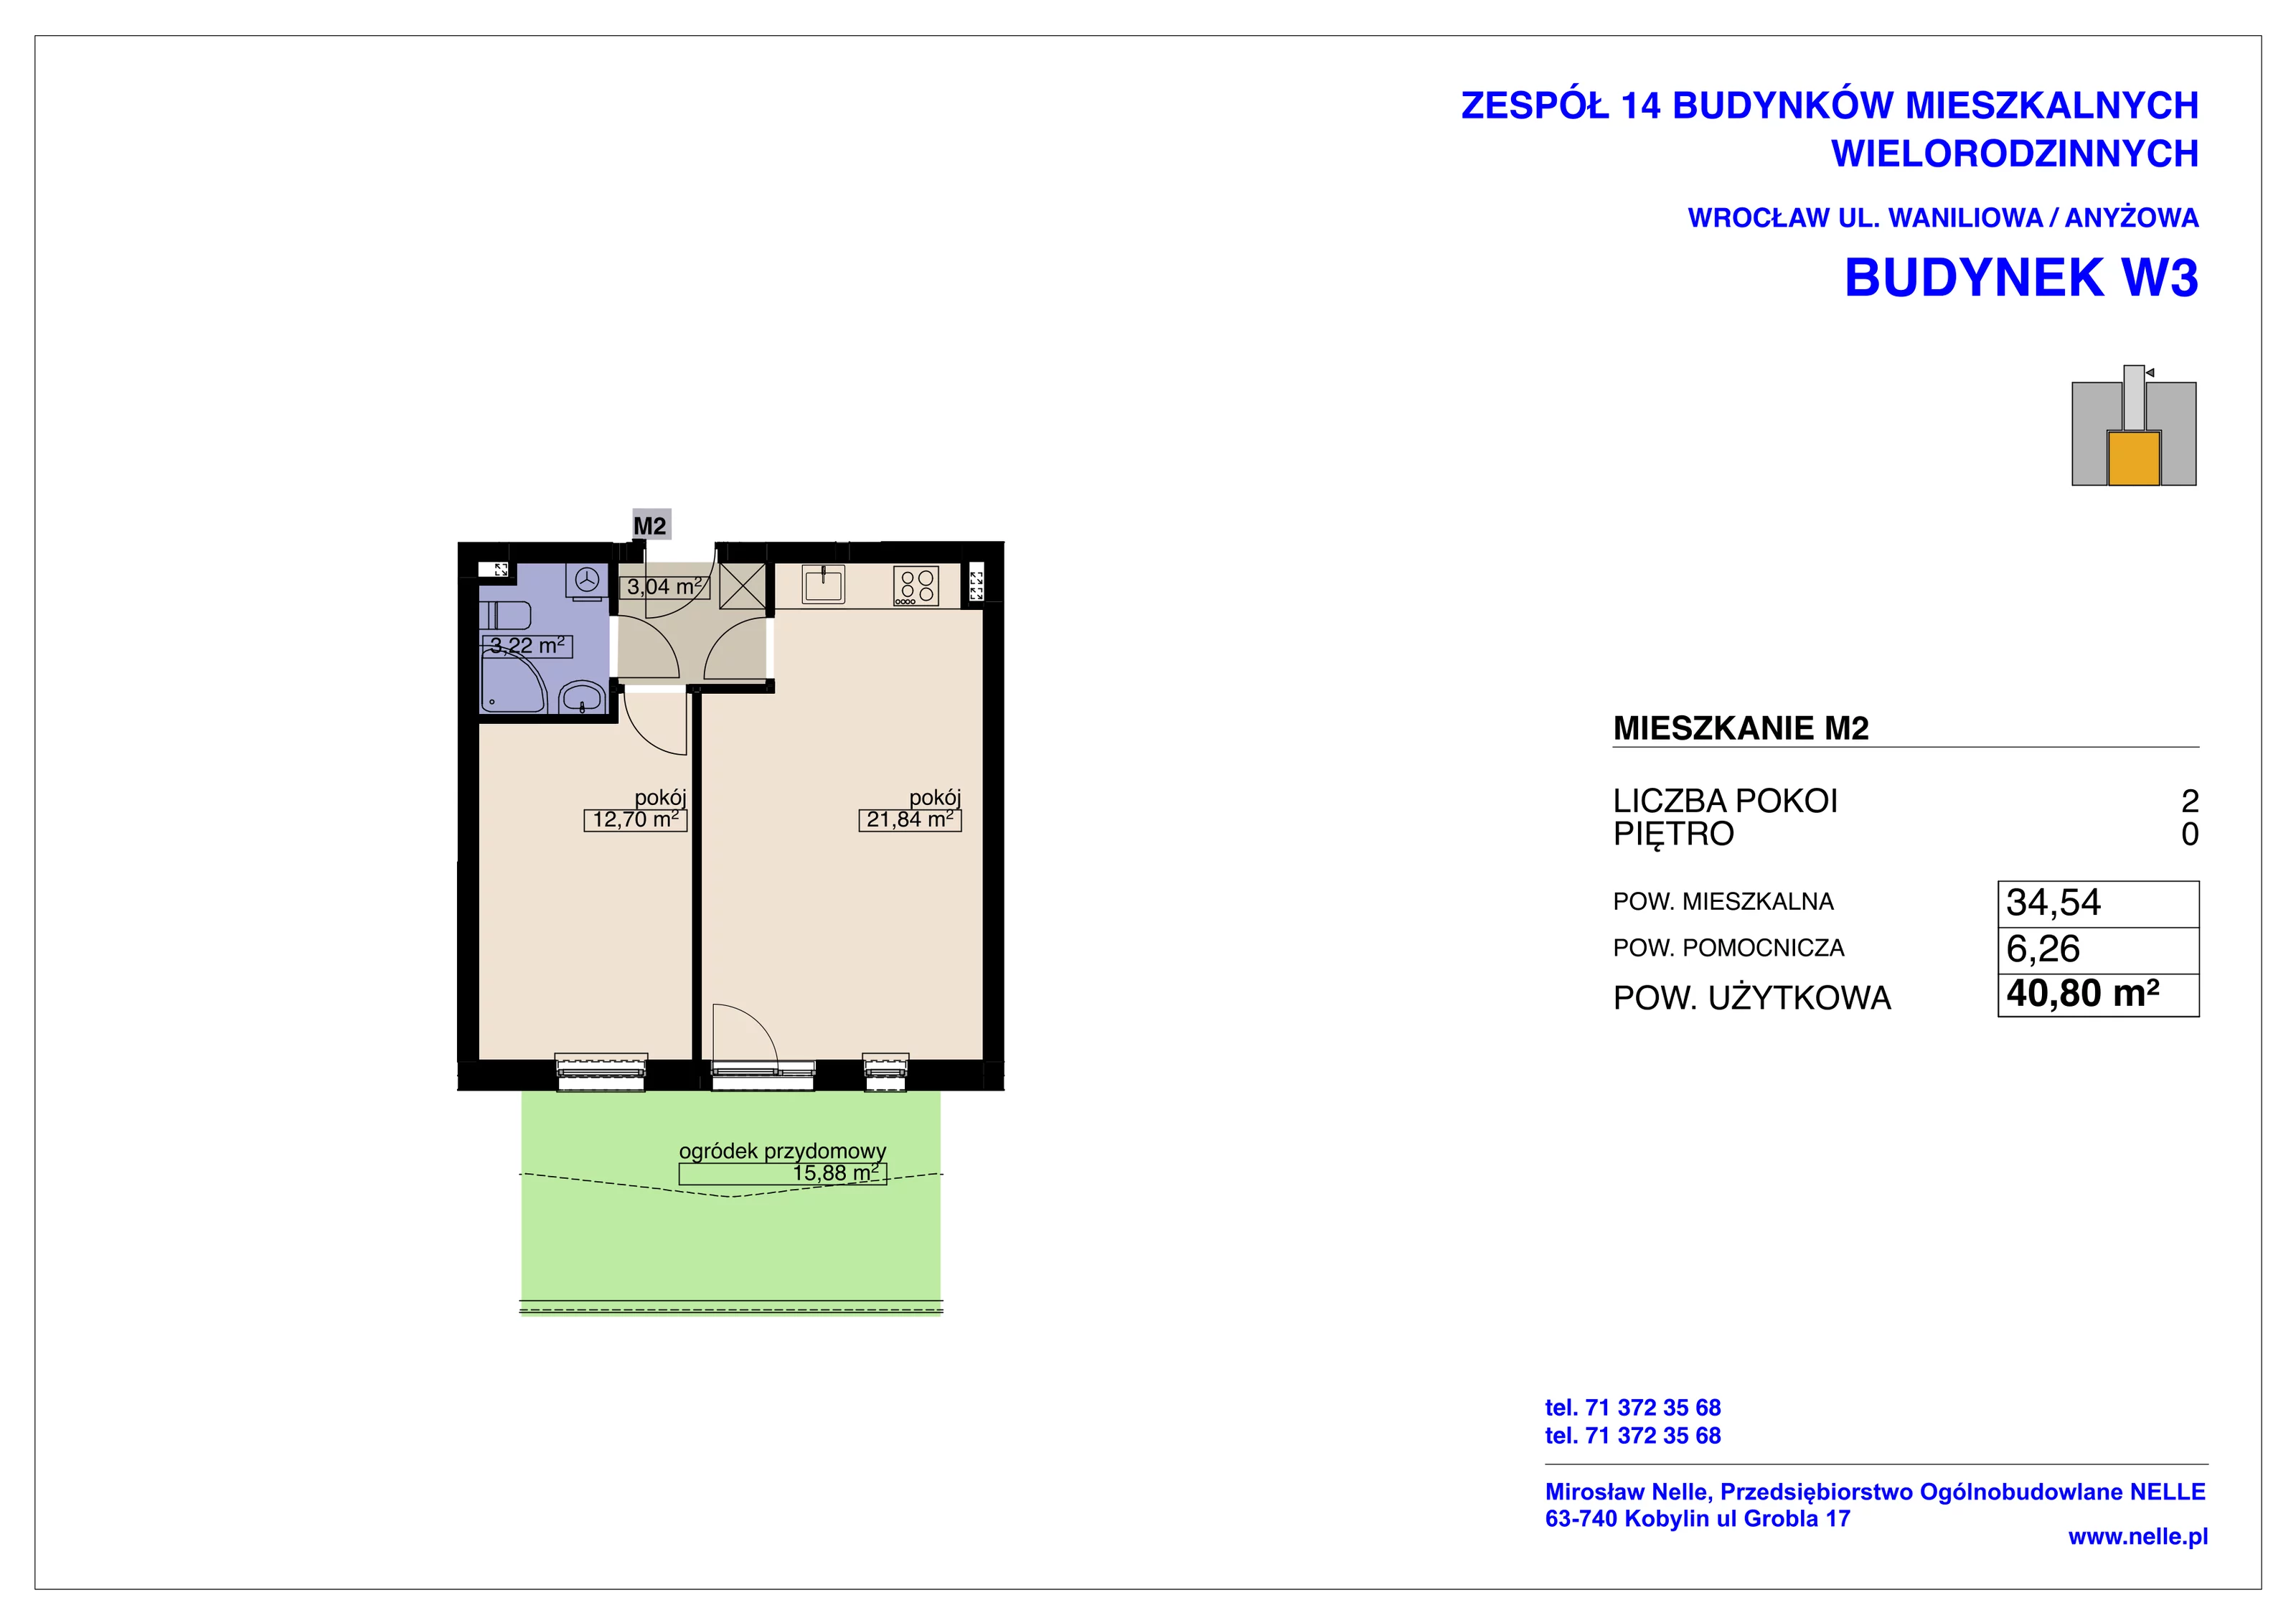 Mieszkanie 40,80 m², parter, oferta nr W3/M2, Osiedle Nelle II, Wrocław, Lipa Piotrowska, Psie Pole, ul. Waniliowa